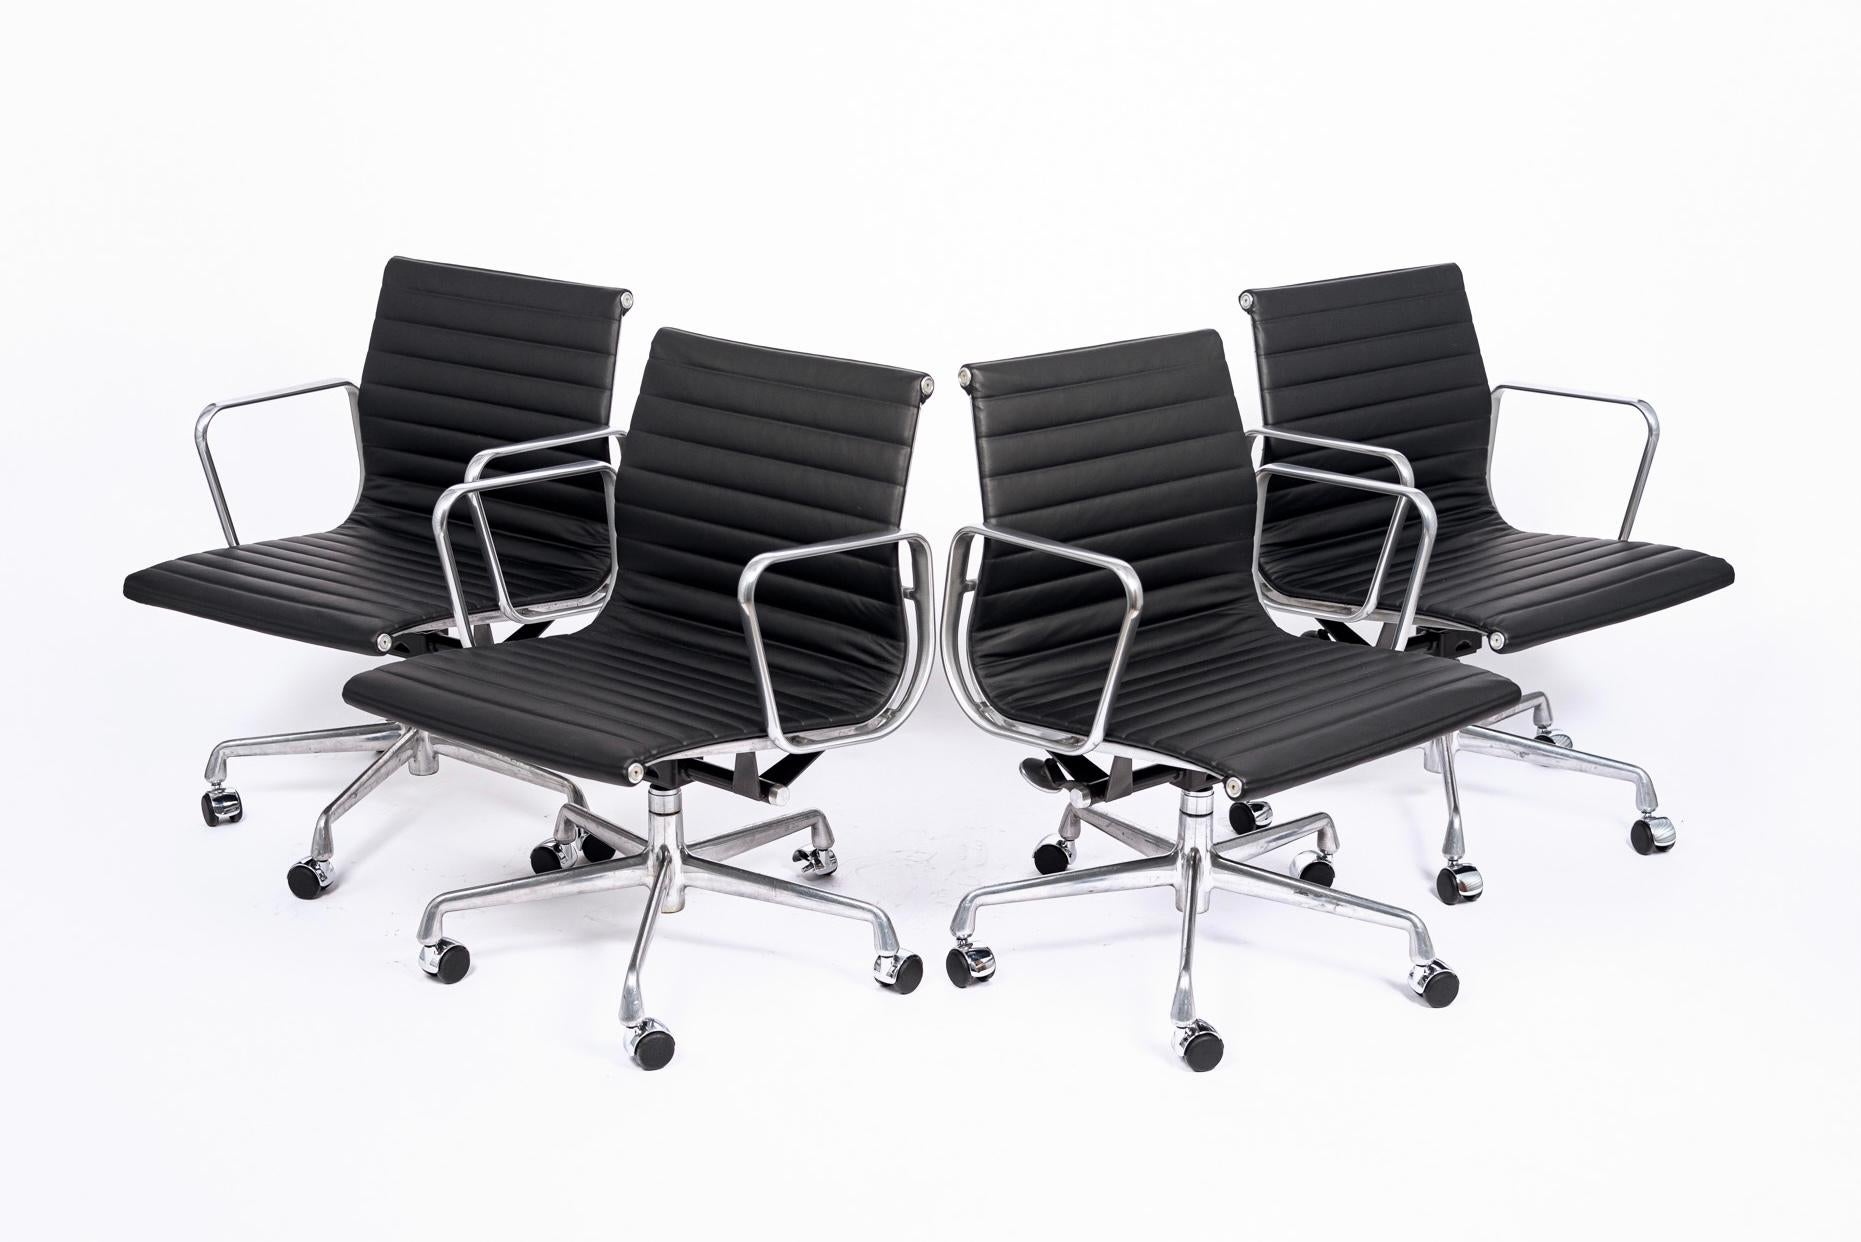 Ces chaises de bureau à hauteur de gestion Aluminum Group, conçues par Charles & Ray Eames pour Herman Miller, font partie de la Eames Aluminum Group Collection. Ces chaises originales sont le fruit de l'expérimentation des Eames avec l'aluminium,